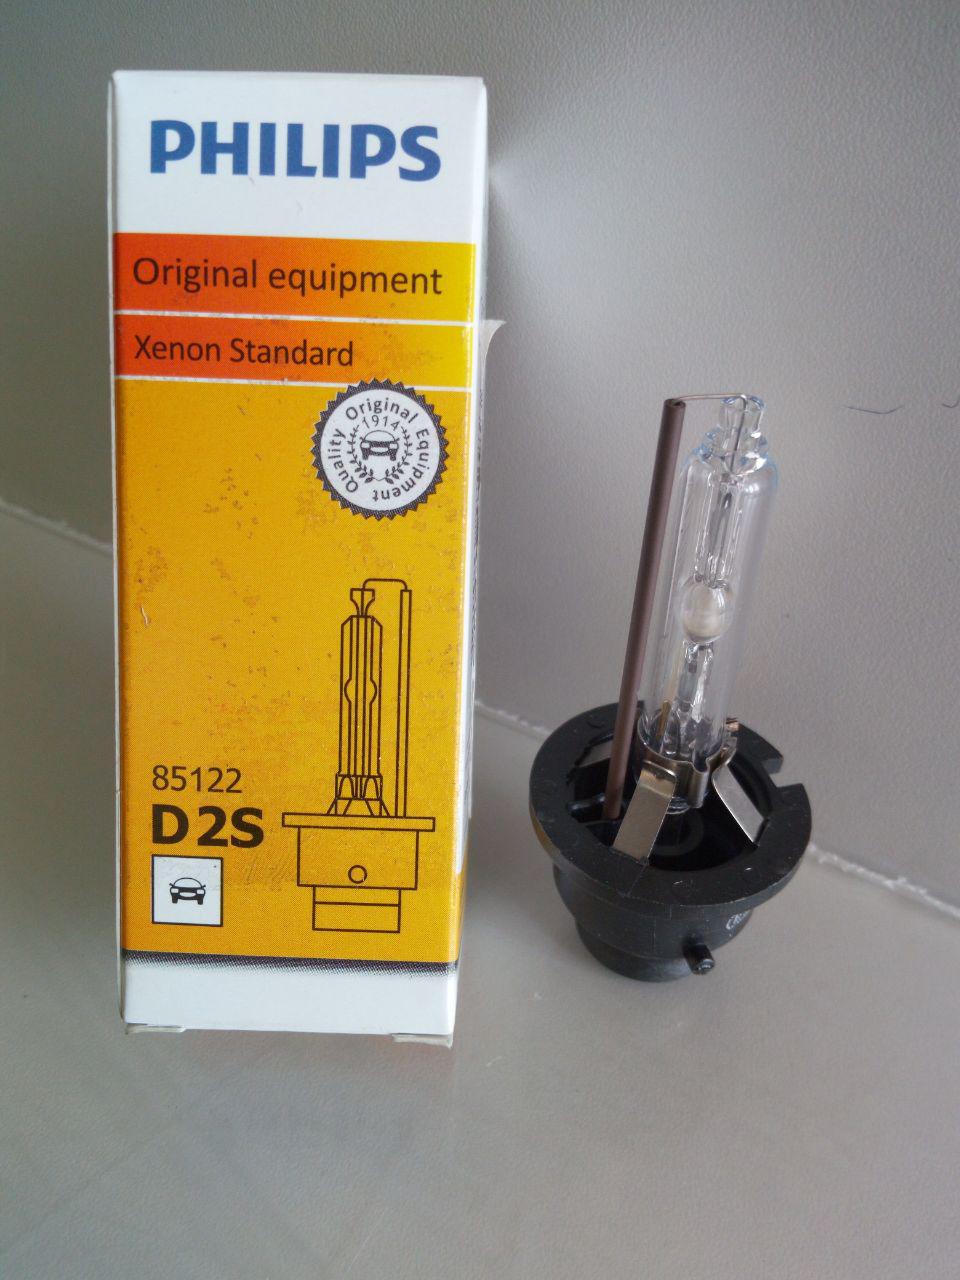 Ксенон филипс. 85122 Philips d2s. D2s Philips 35w 85122 03v. Philips d2s Original Xenon Standart — 85122. Лампа ксенон d2s 35w 85122+.